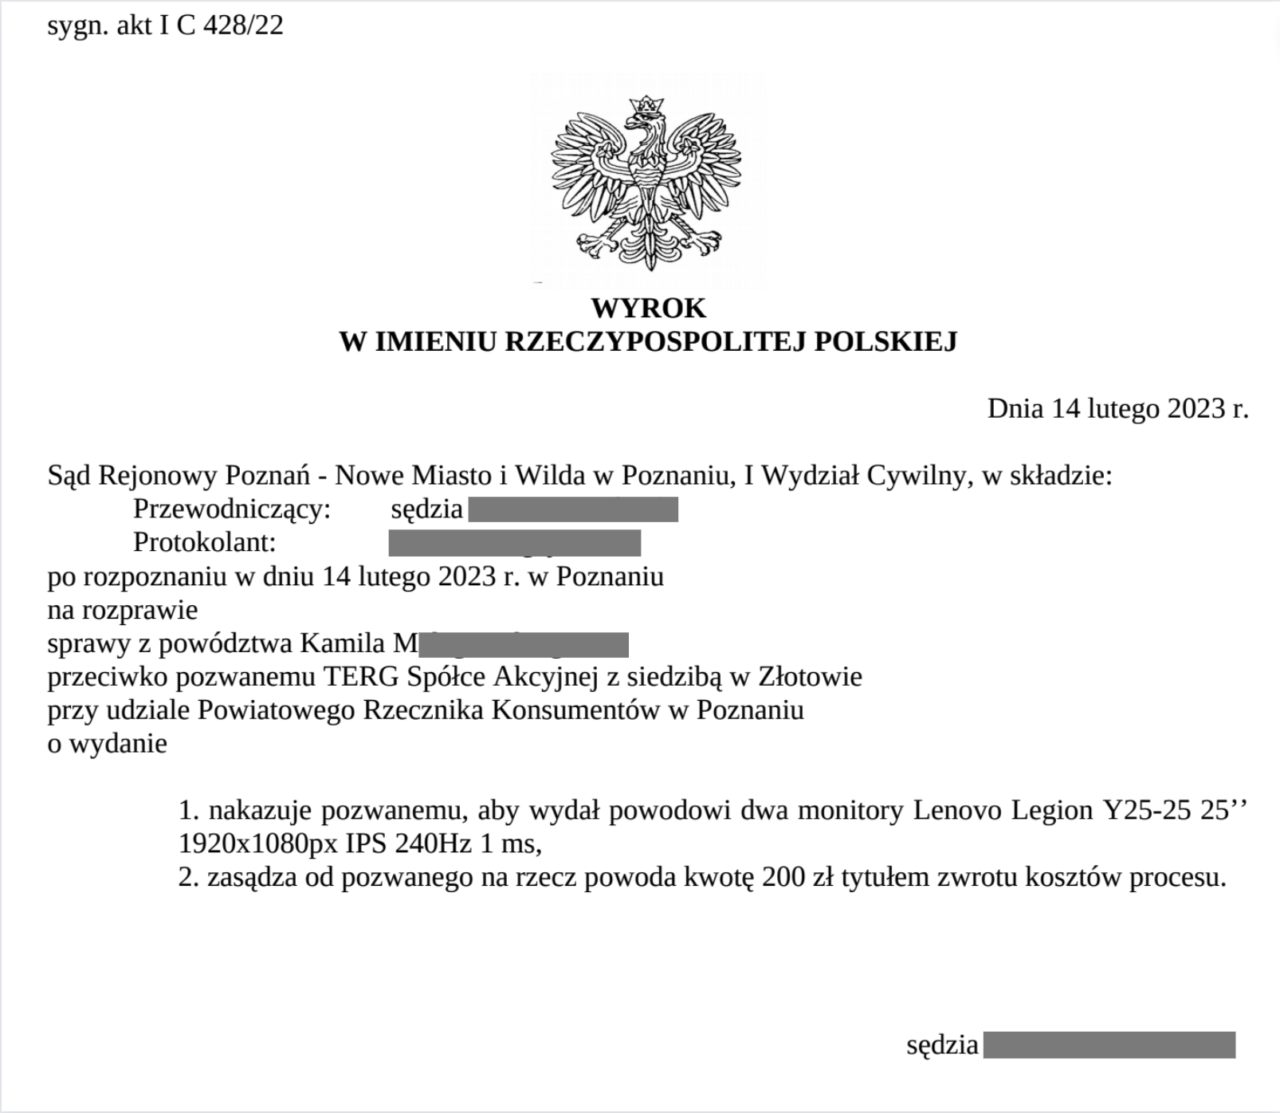 Dokument sądowy, zatytułowany "WYROK W IMIENIU RZECZYPOSPOLITEJ POLSKIEJ", zawierający szczegóły rozstrzygnięcia sądowego wydanego przez Sąd Rejonowy w Poznaniu, z datą 14 lutego 2023 roku, gdzie są częściowo zamazane dane osobowe.